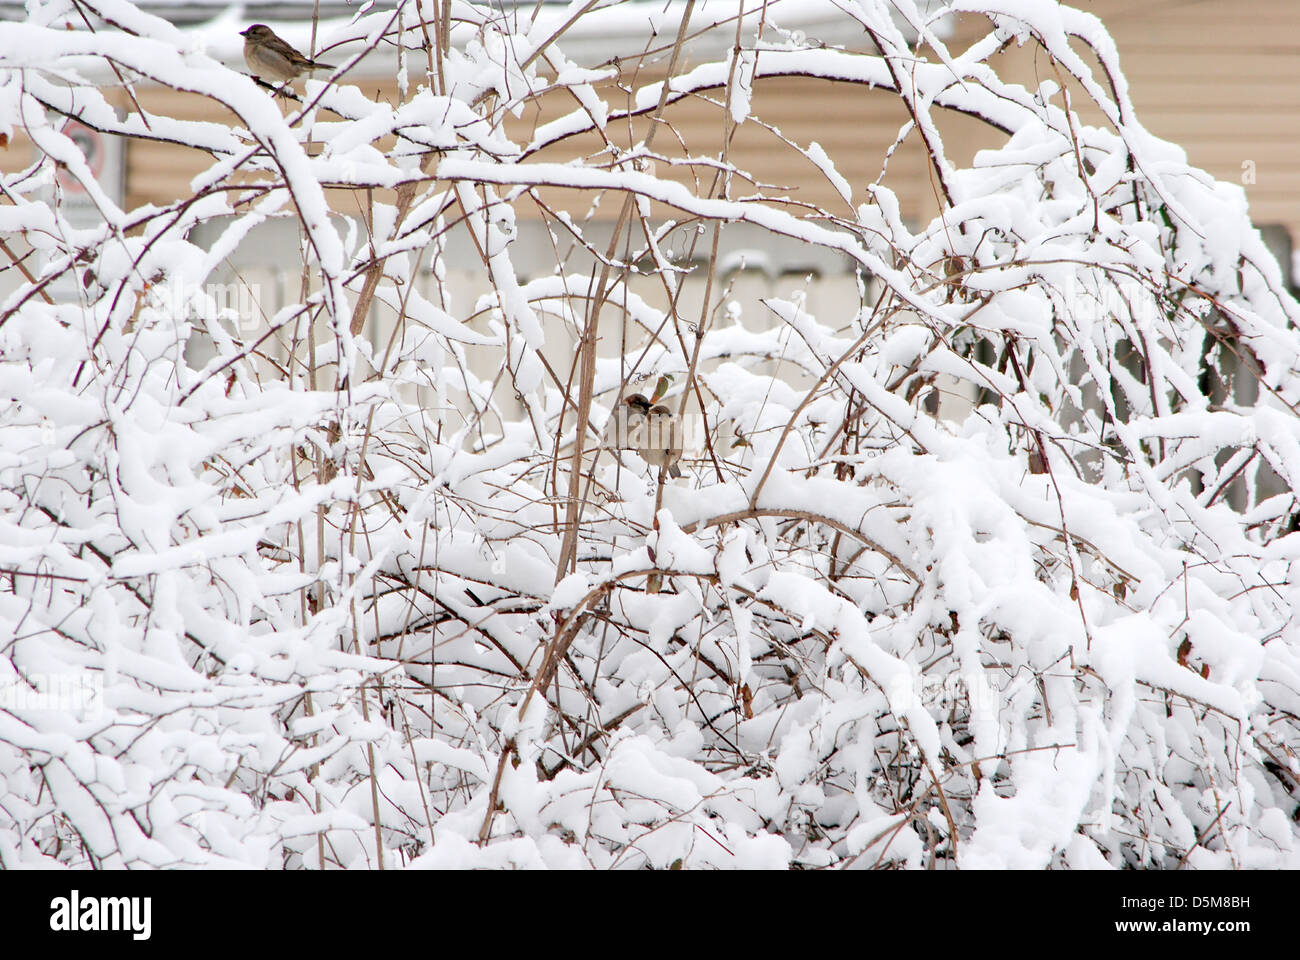 Vögel, inmitten der verschneiten Busch nach dem Sturm, Selig, genießen die Ruhe. Stockfoto